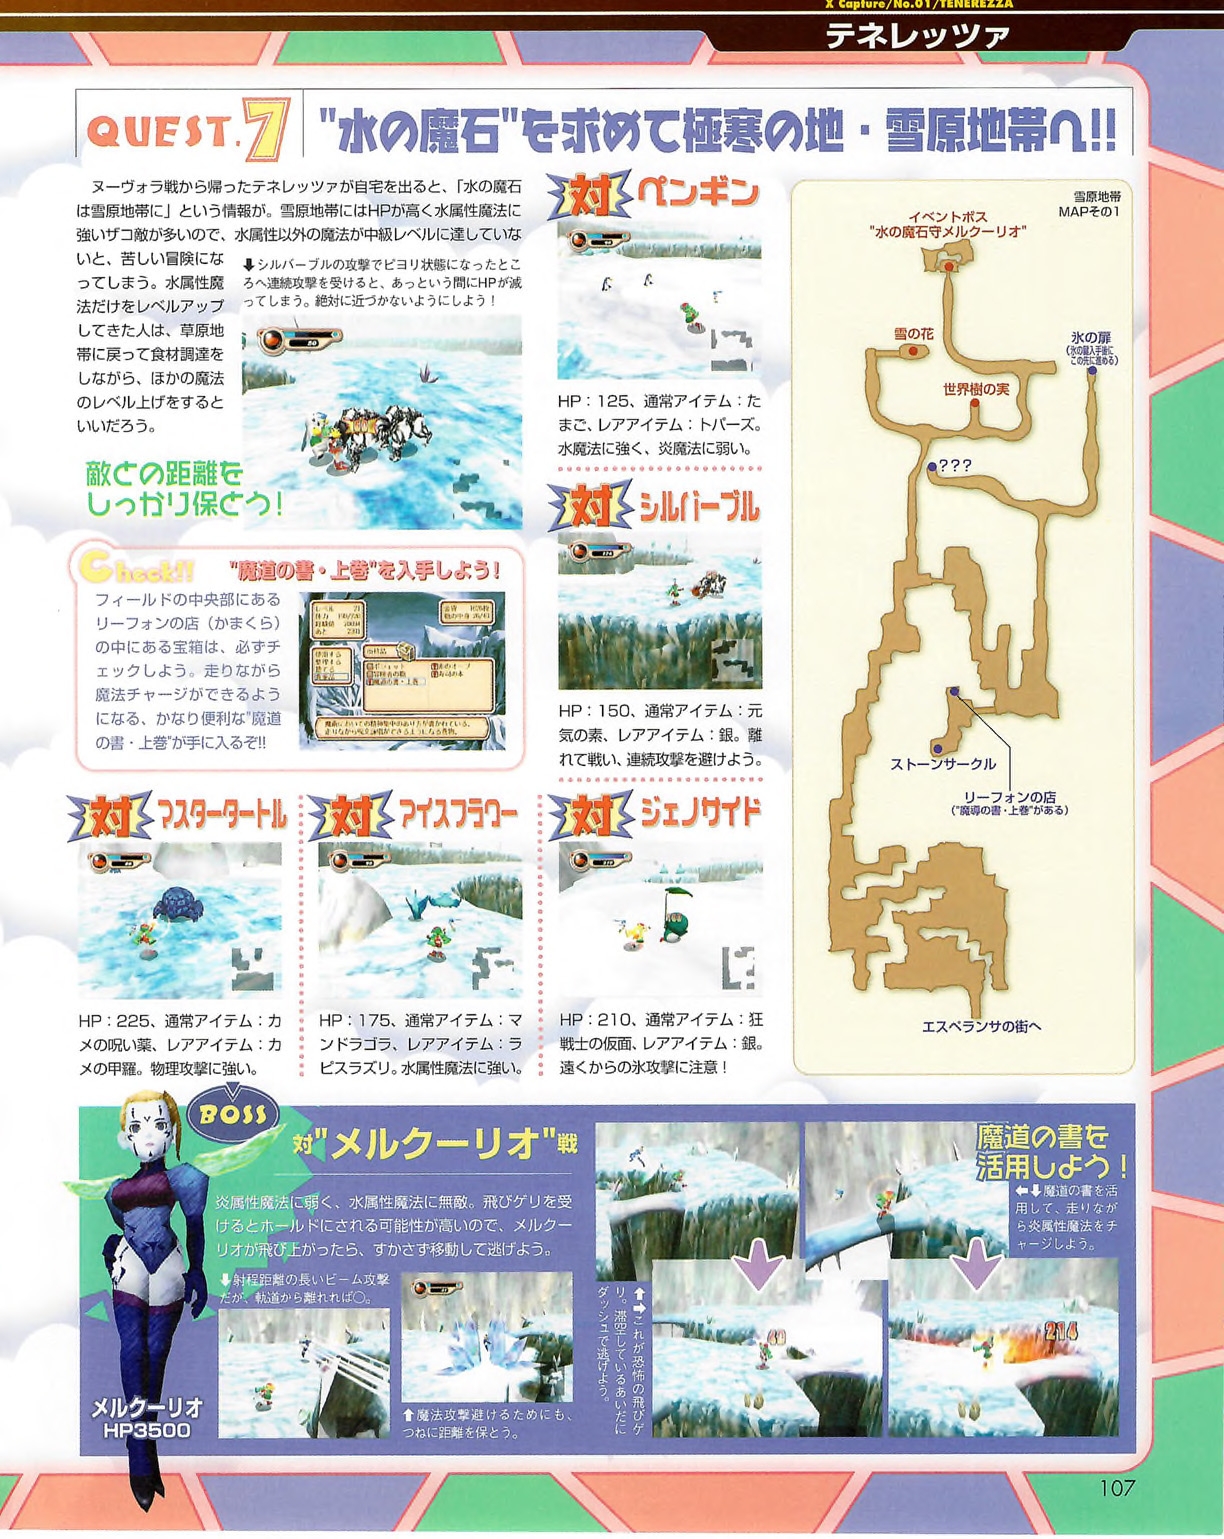 Famitsu_Xbox_2003-04_jp2 106